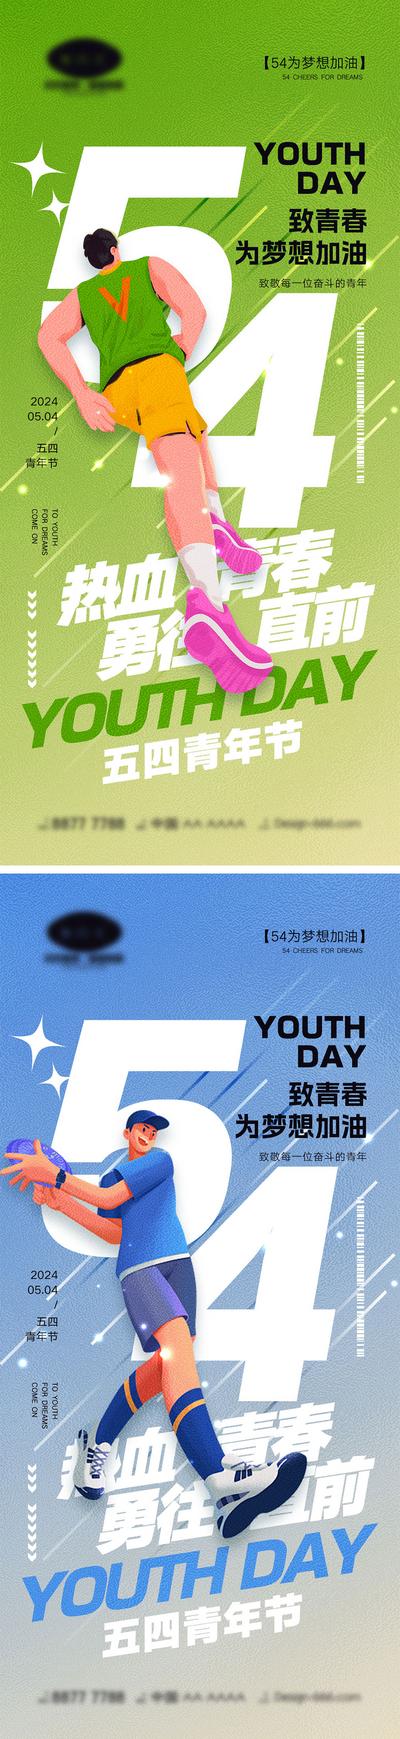 南门网 广告 海报 运动 青年节 大字报 公历节日 54 五四 年轻人 青春 活力 激情 向上 积极